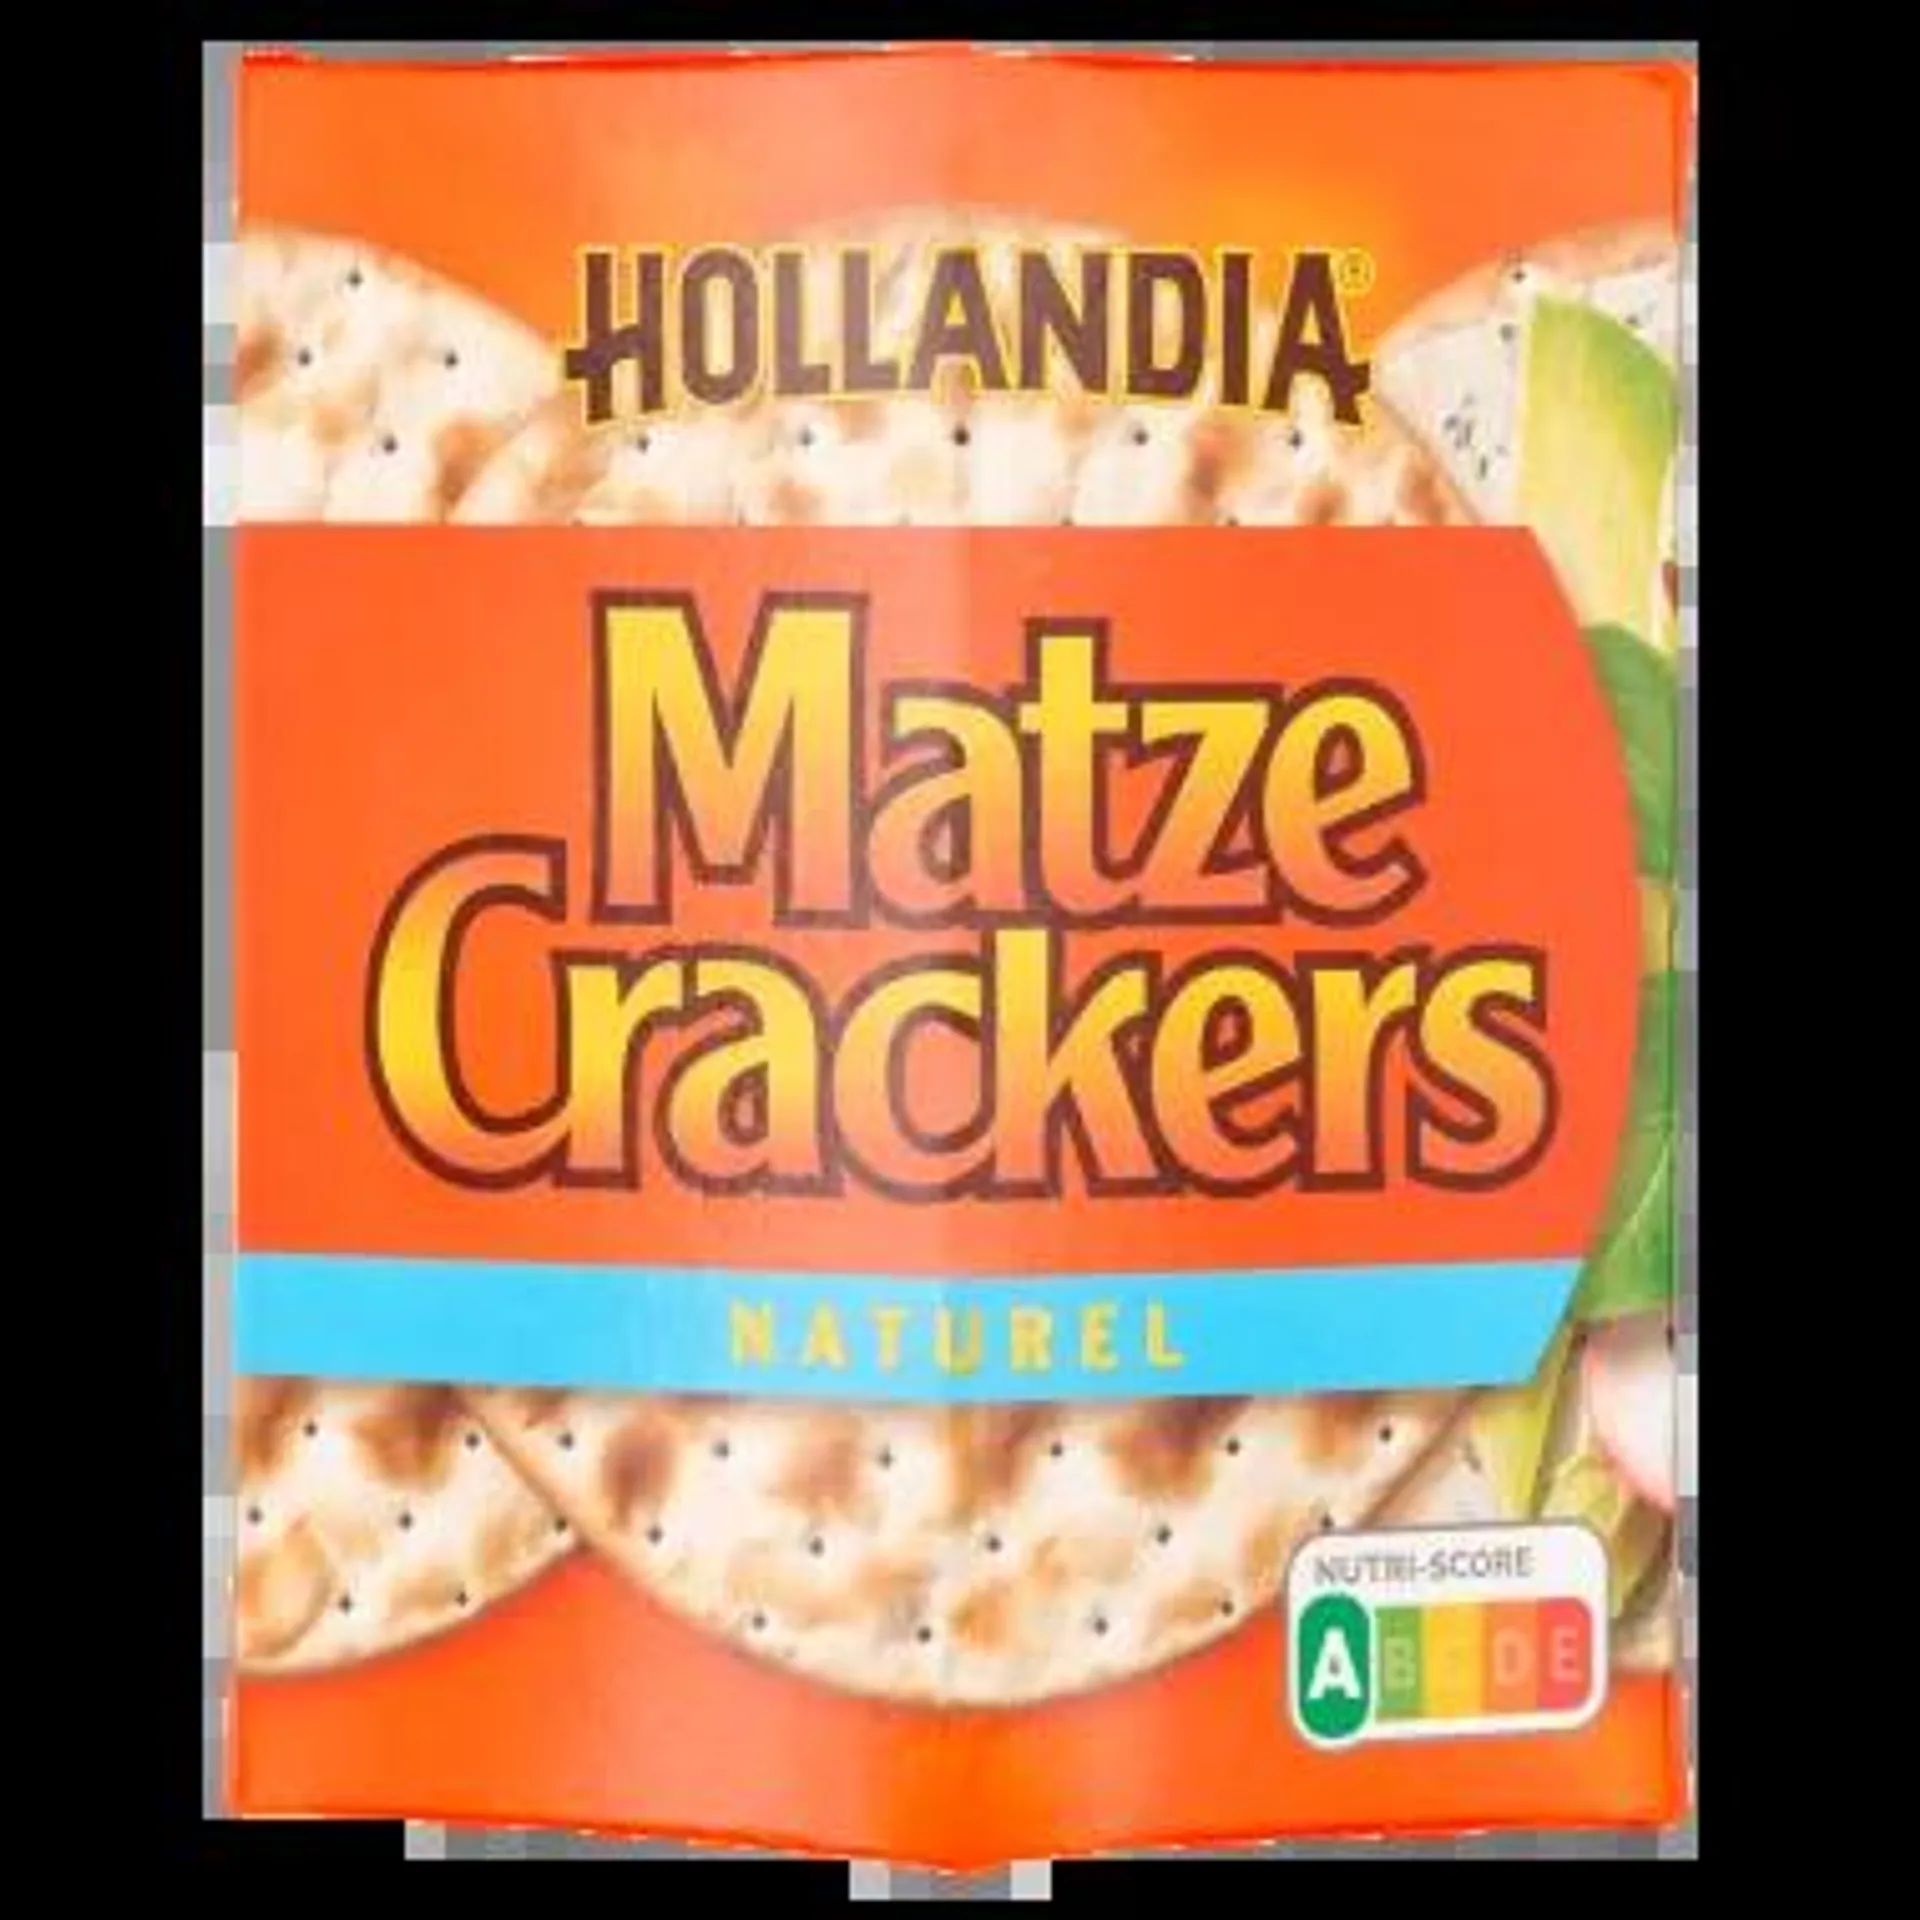 Hollandia Matzes crackers naturel